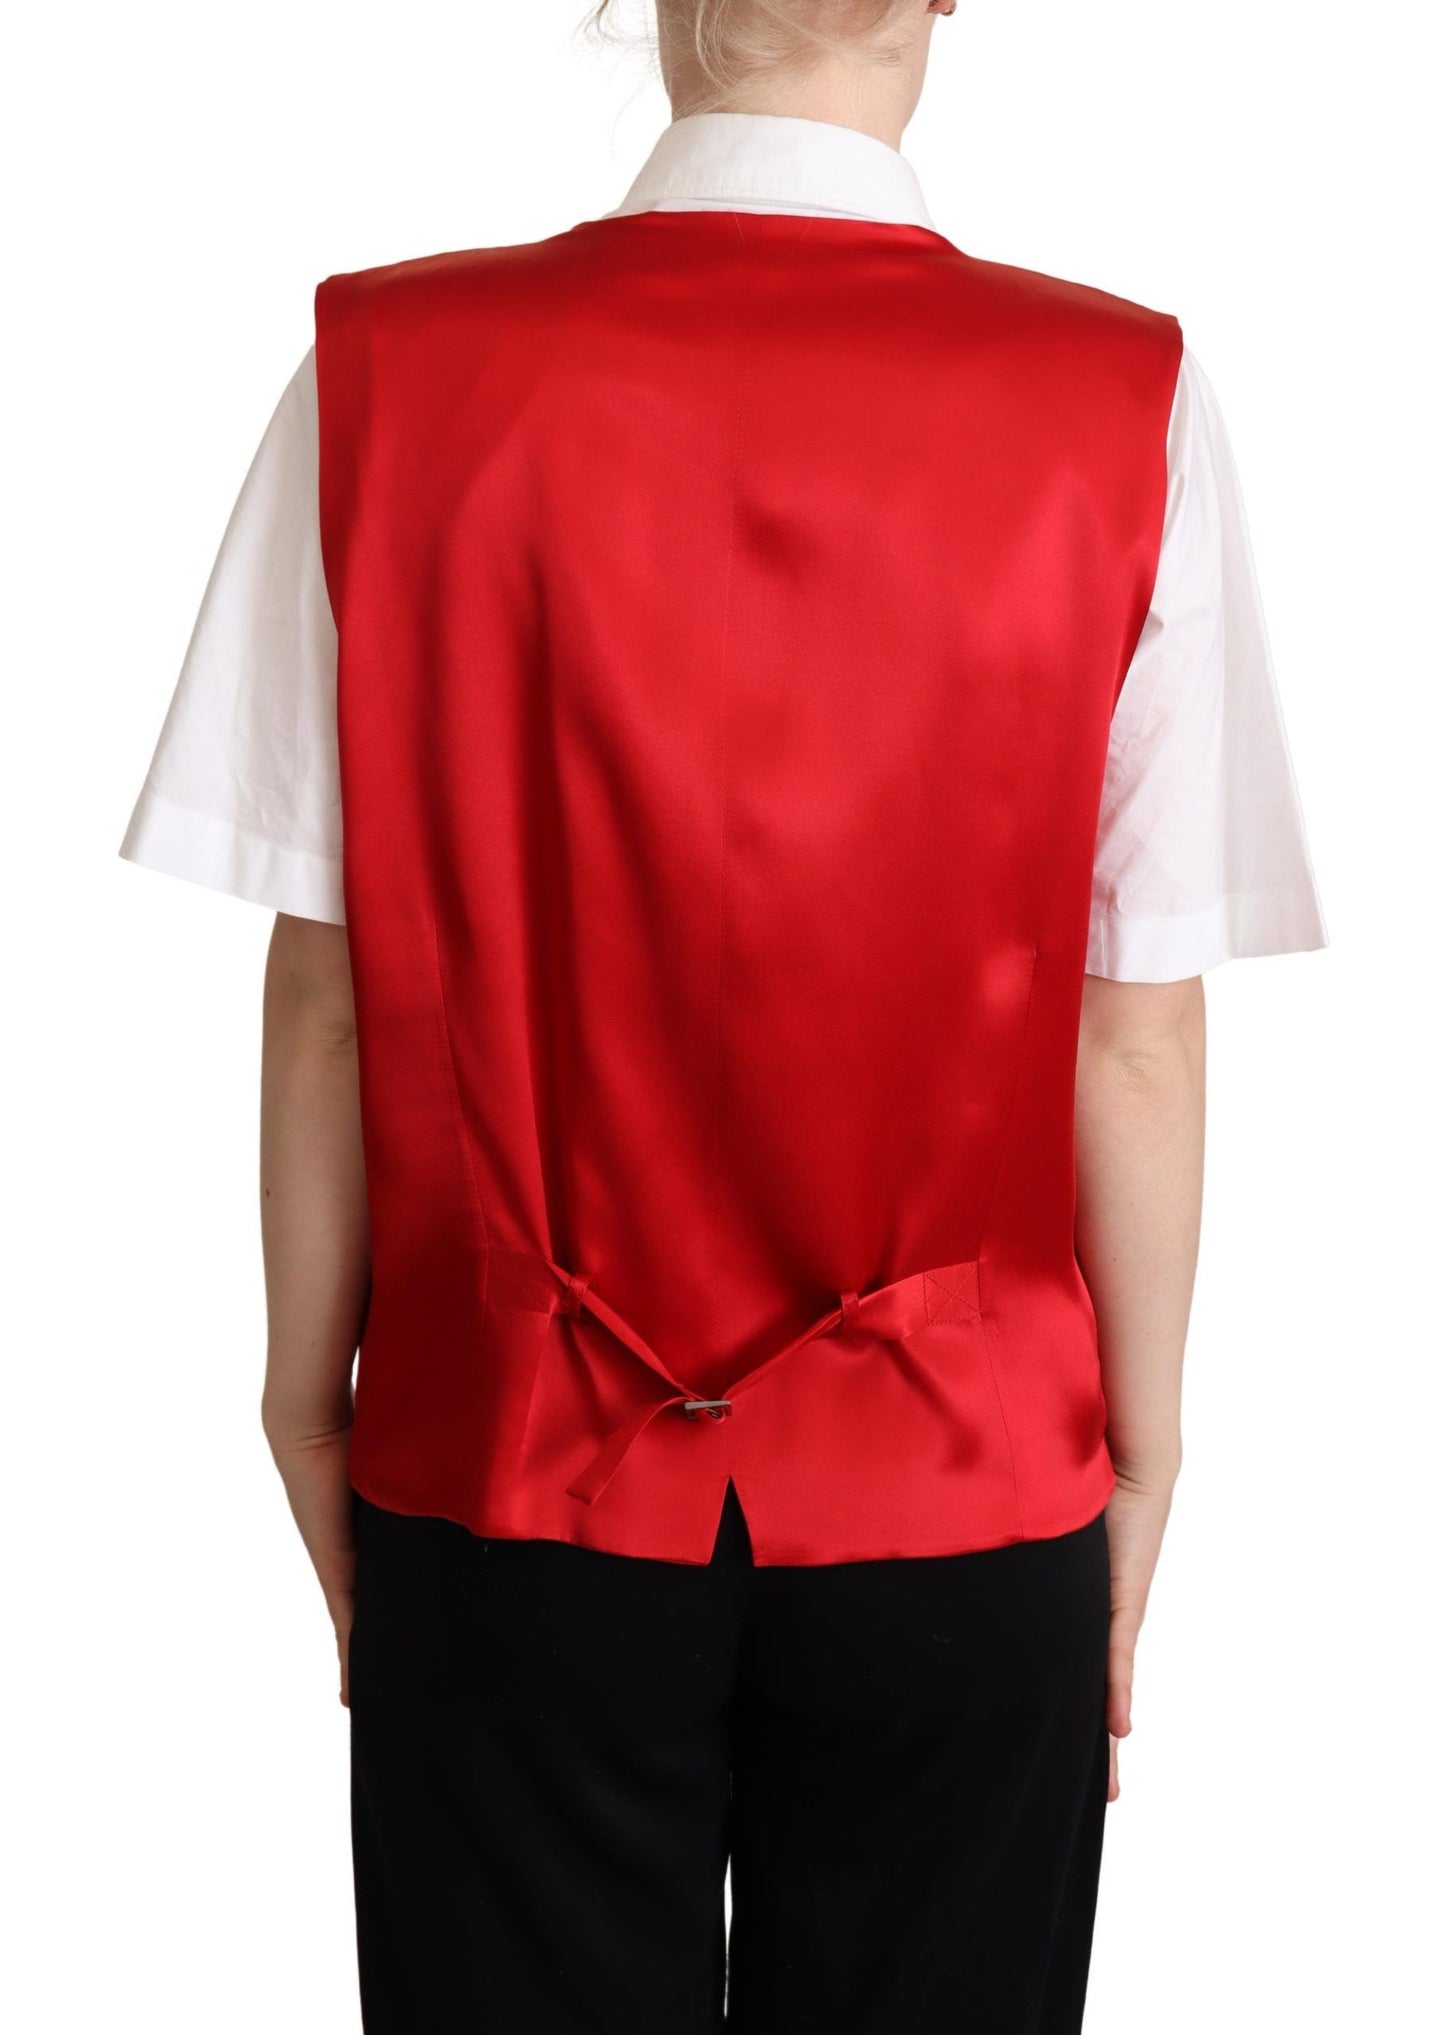 Dolce & Gabbana Elegant Red Virgin Wool Sleeveless Vest